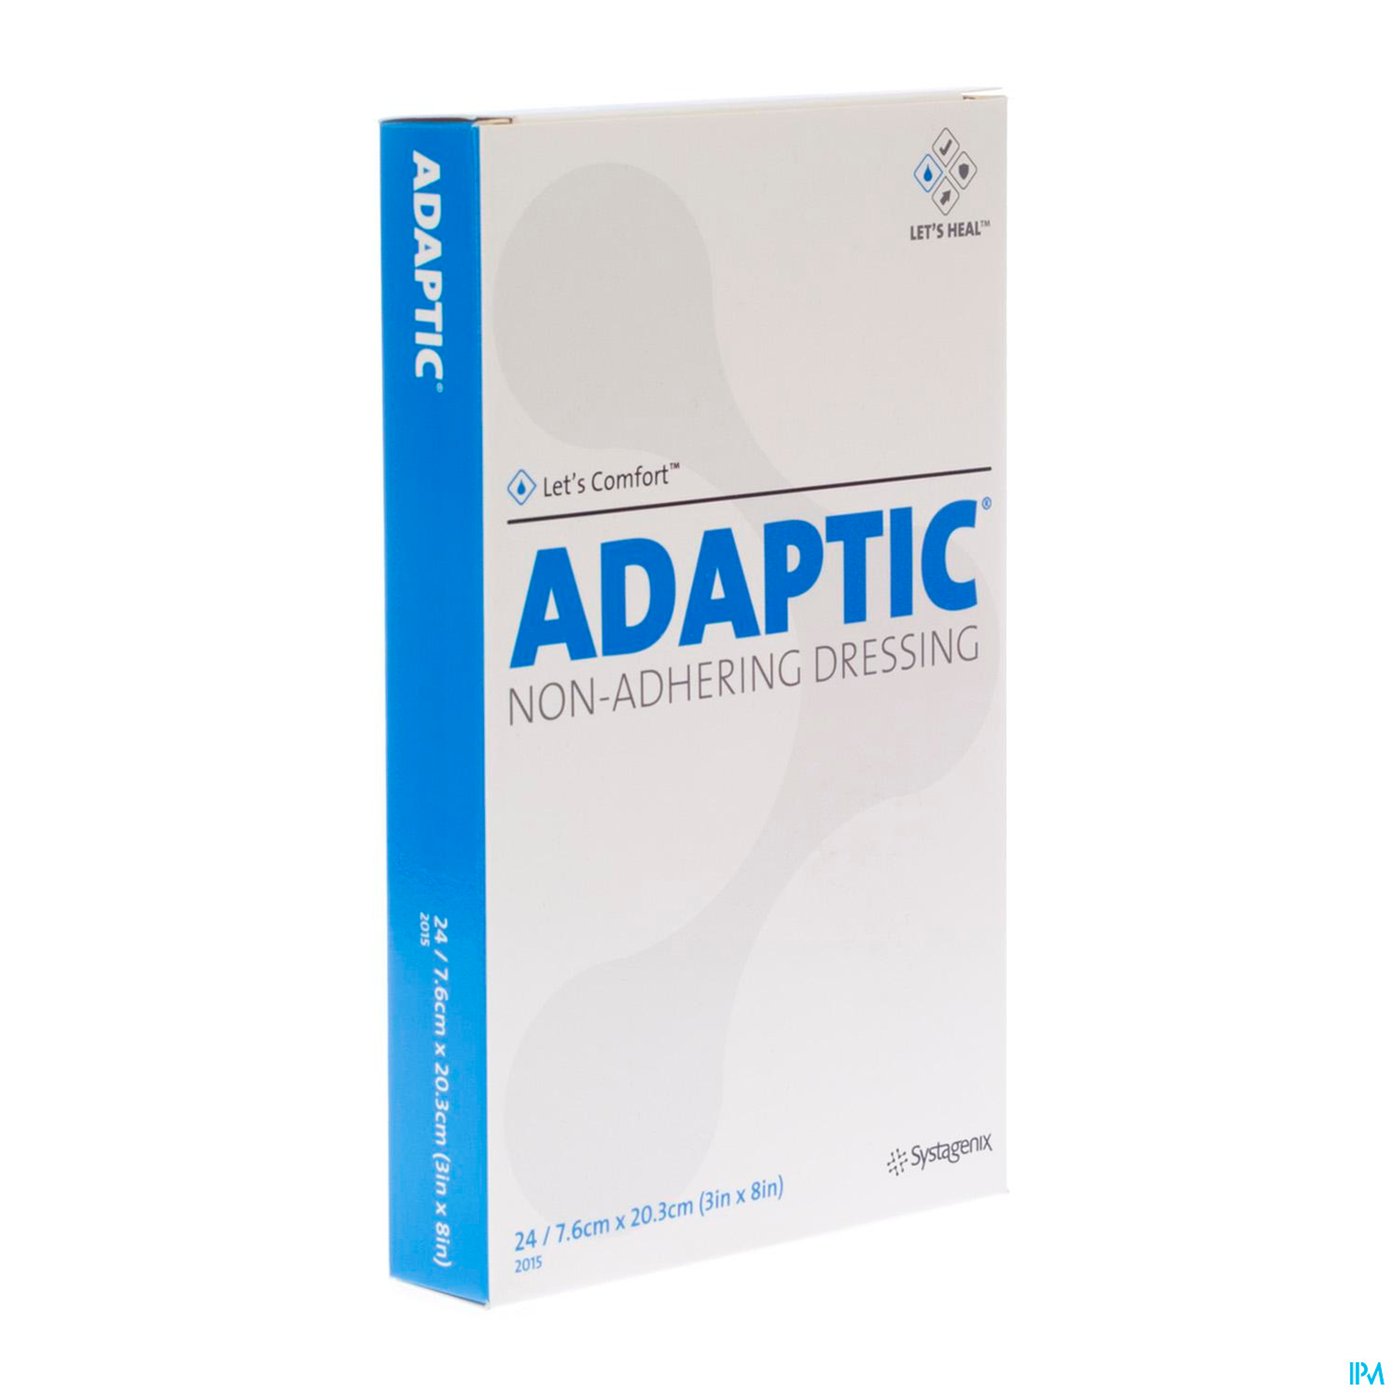 Adaptic Kp Doordr. 7,5x20,0cm 24 2015